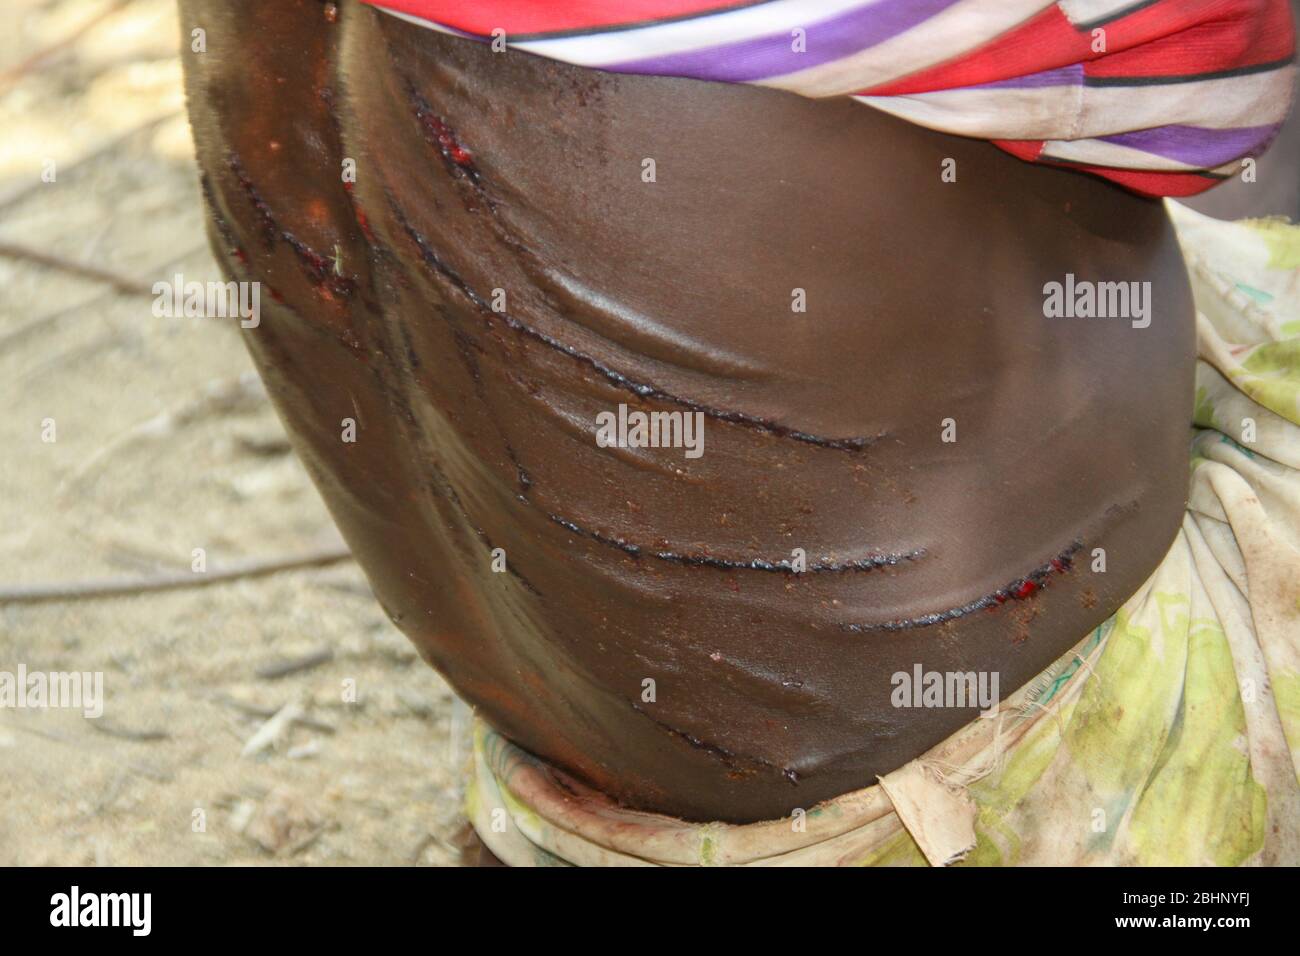 Les cicatrices brutes sur le dos d'une femme Hamar après avoir été fouettées lors d'une cérémonie de "saut du taureau". Photographié dans la vallée de la rivière Omo, en Ethiopie Banque D'Images